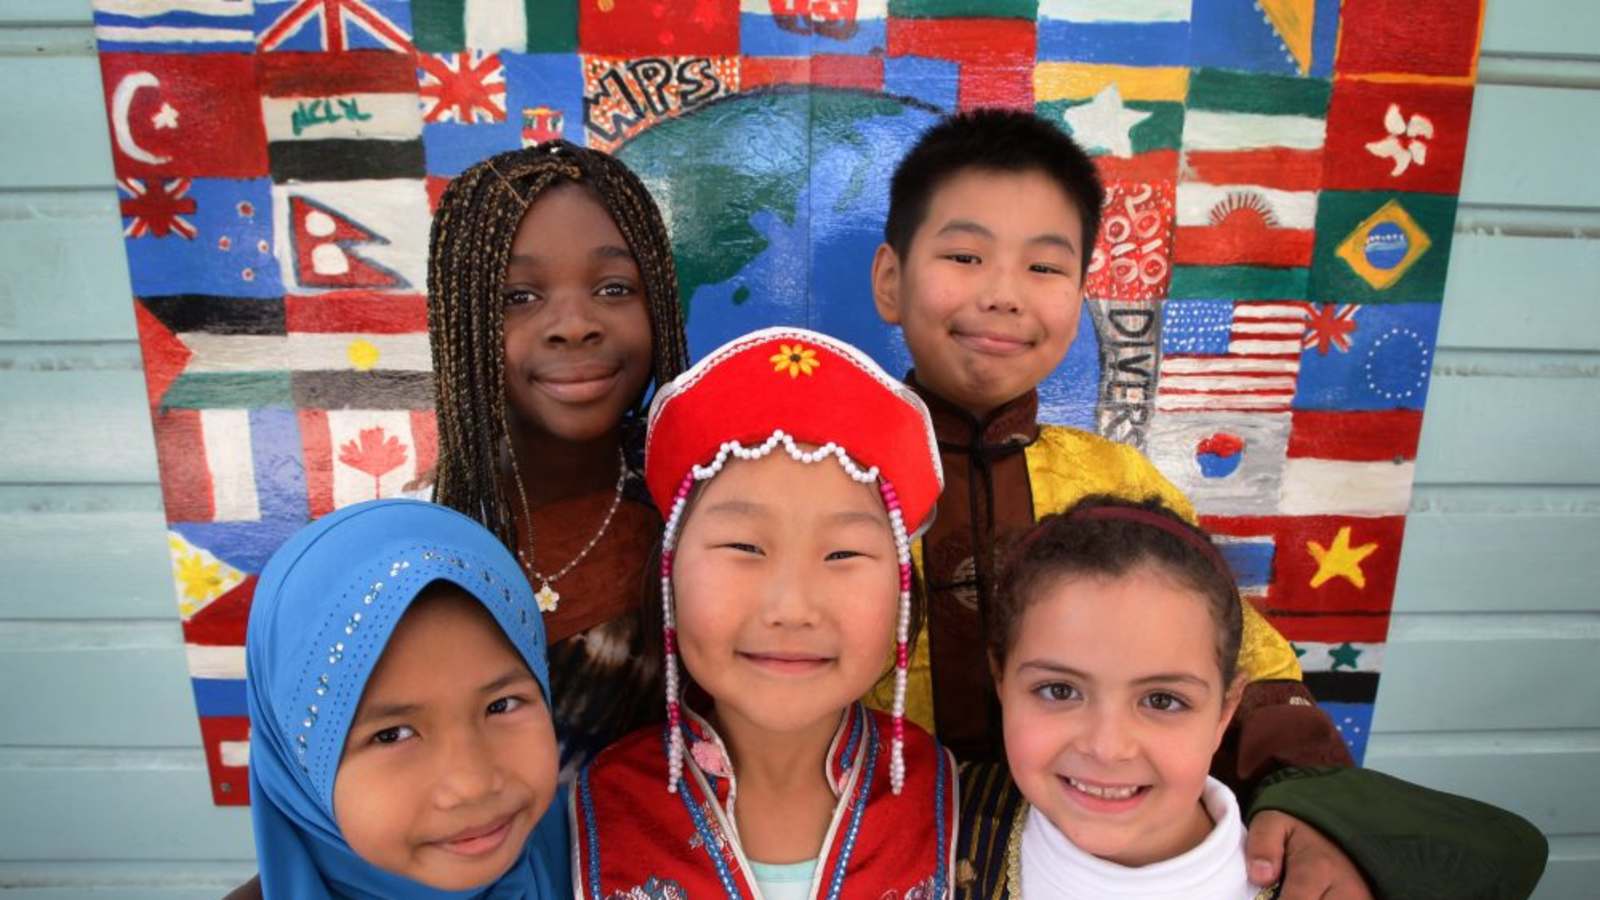 色々な国の国旗と世界地図が描かれている布の前で様々な衣装を着た4人の子供がいる写真